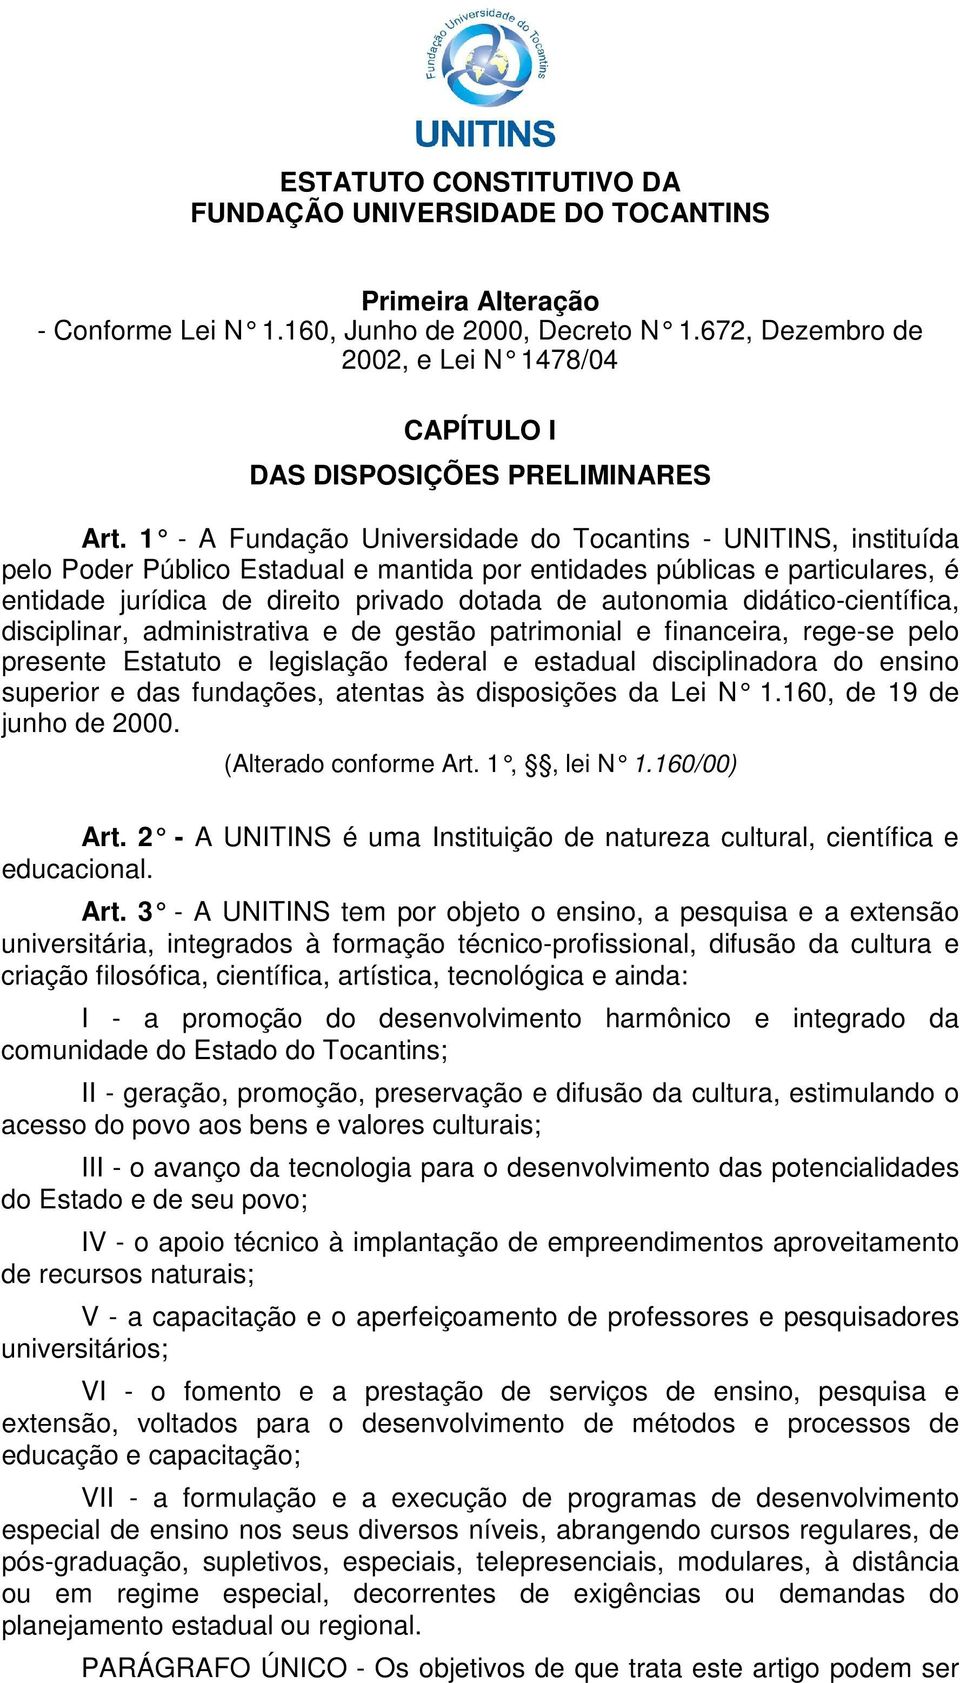 1 - A Fundação Universidade do Tocantins - UNITINS, instituída pelo Poder Público Estadual e mantida por entidades públicas e particulares, é entidade jurídica de direito privado dotada de autonomia